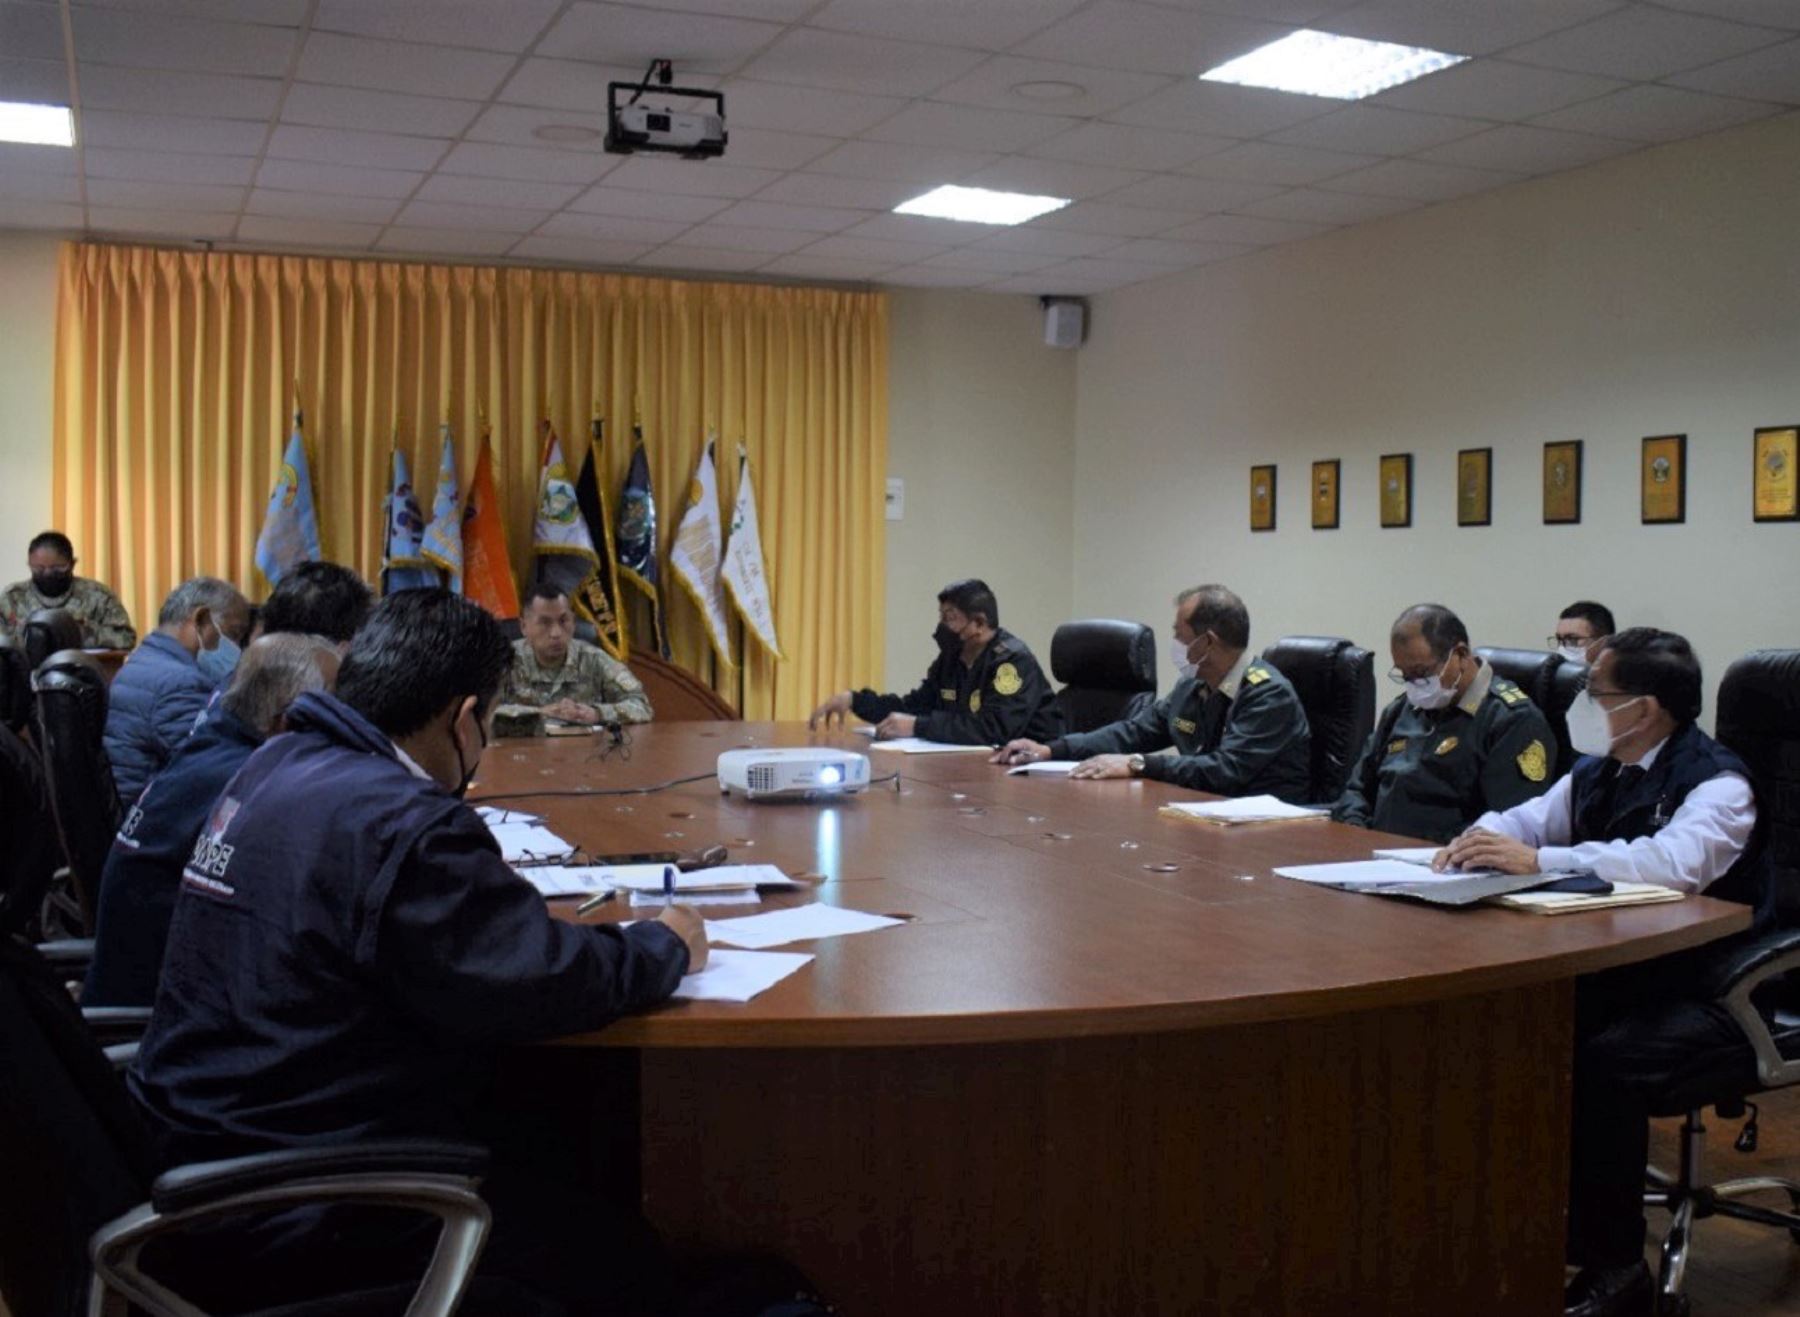 Autoridades de Cusco coordinan la seguridad y custodia del material electoral que se emplearán en los comicios regionales y municipales que se celebrarán el 2 de octubre próximo. ANDINA/Difusión